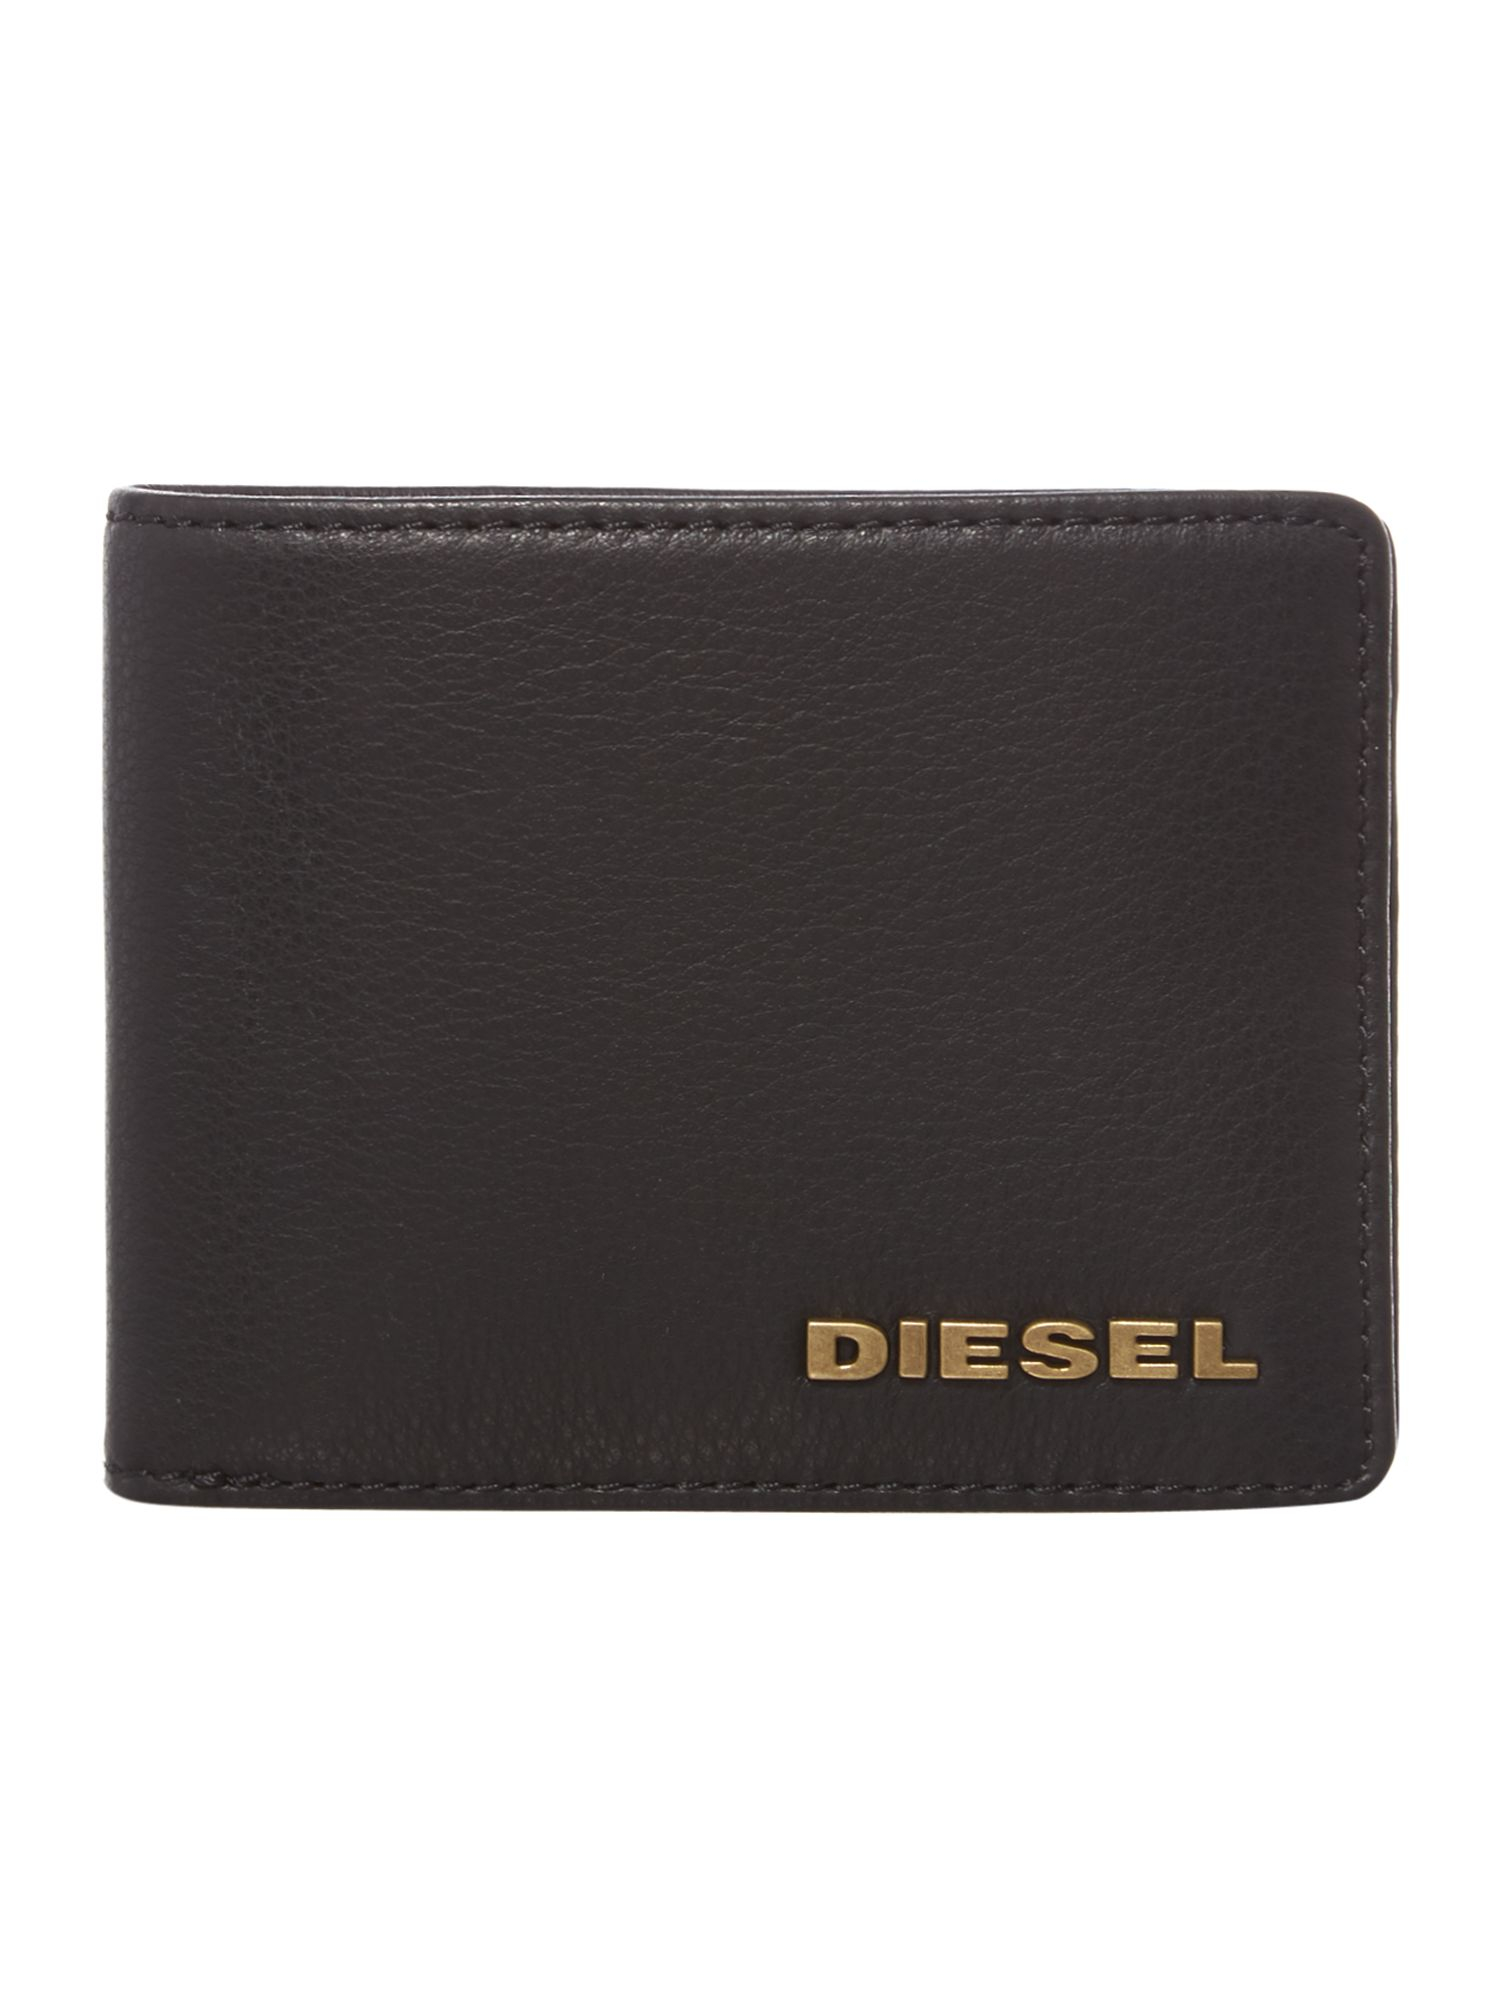 Diesel Logo Billfold Wallet in Black for Men | Lyst